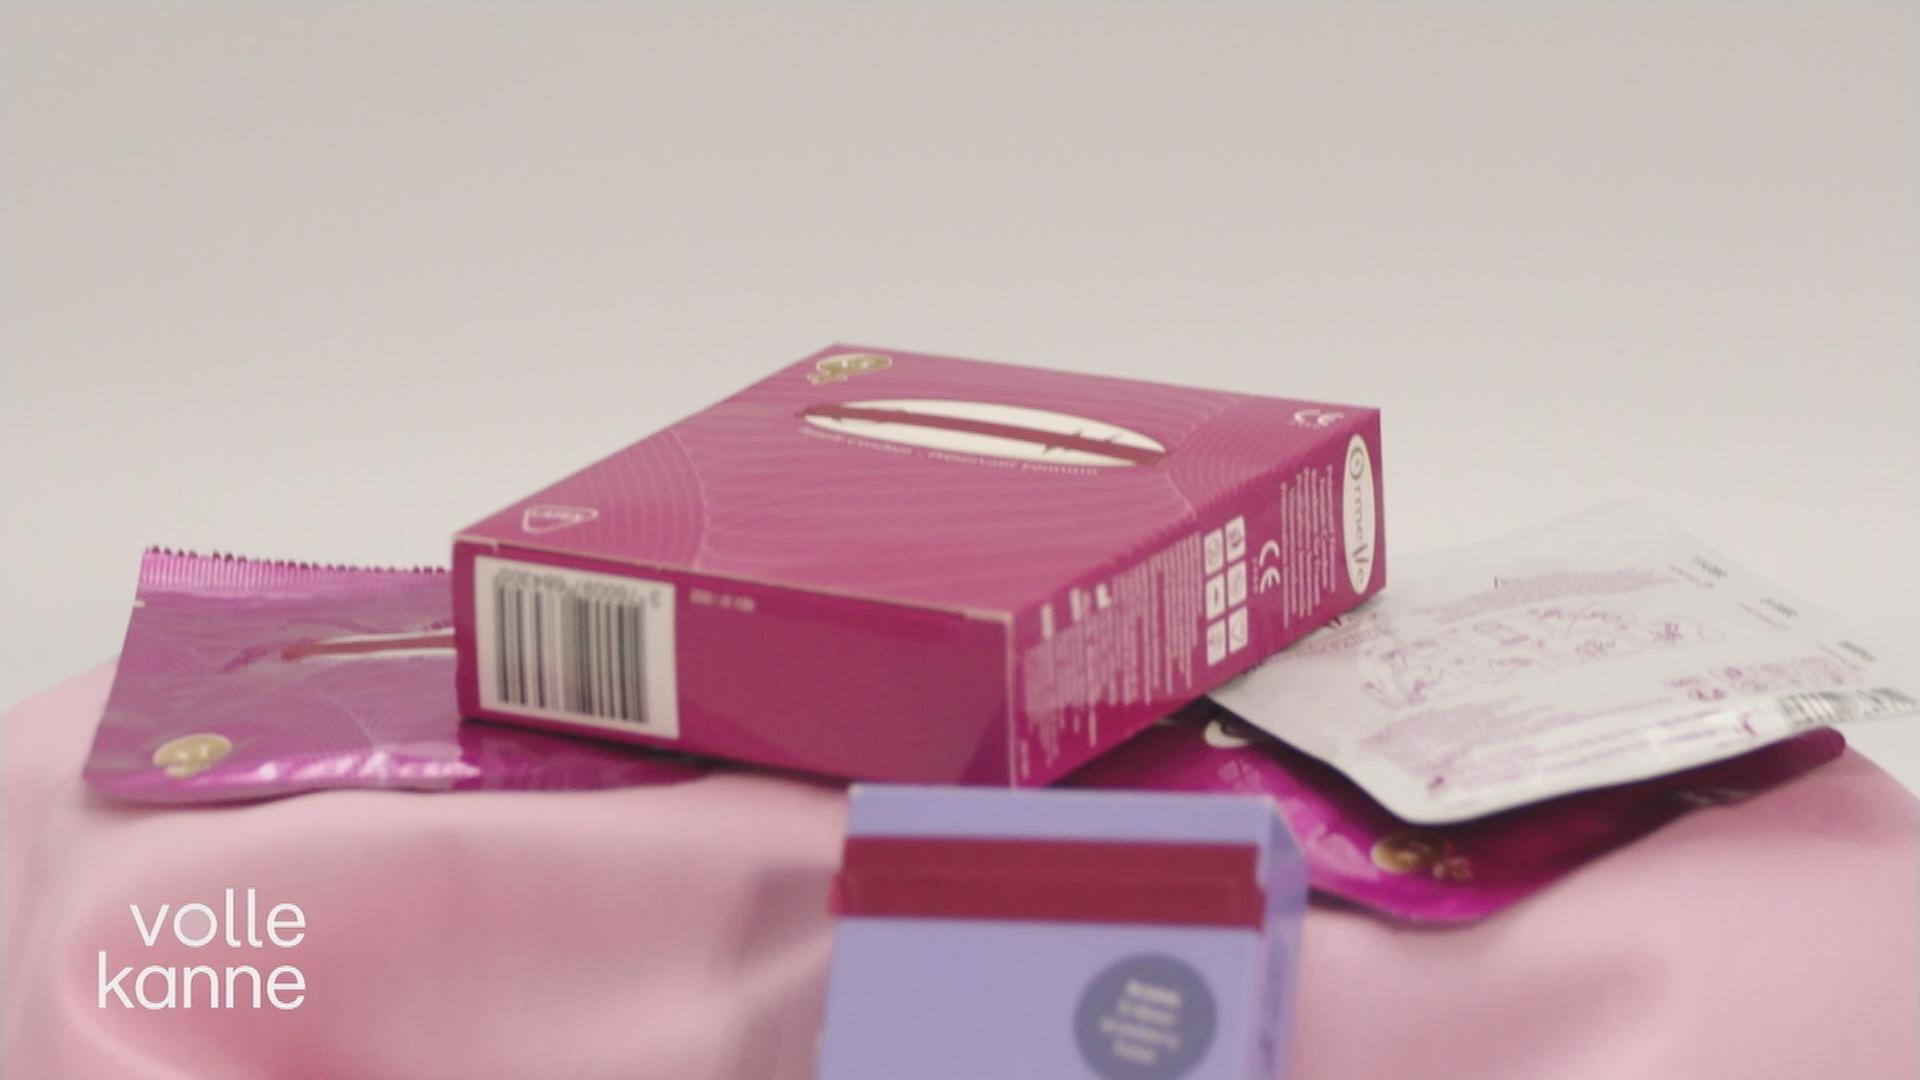 Kondom- und Pillenpackungen